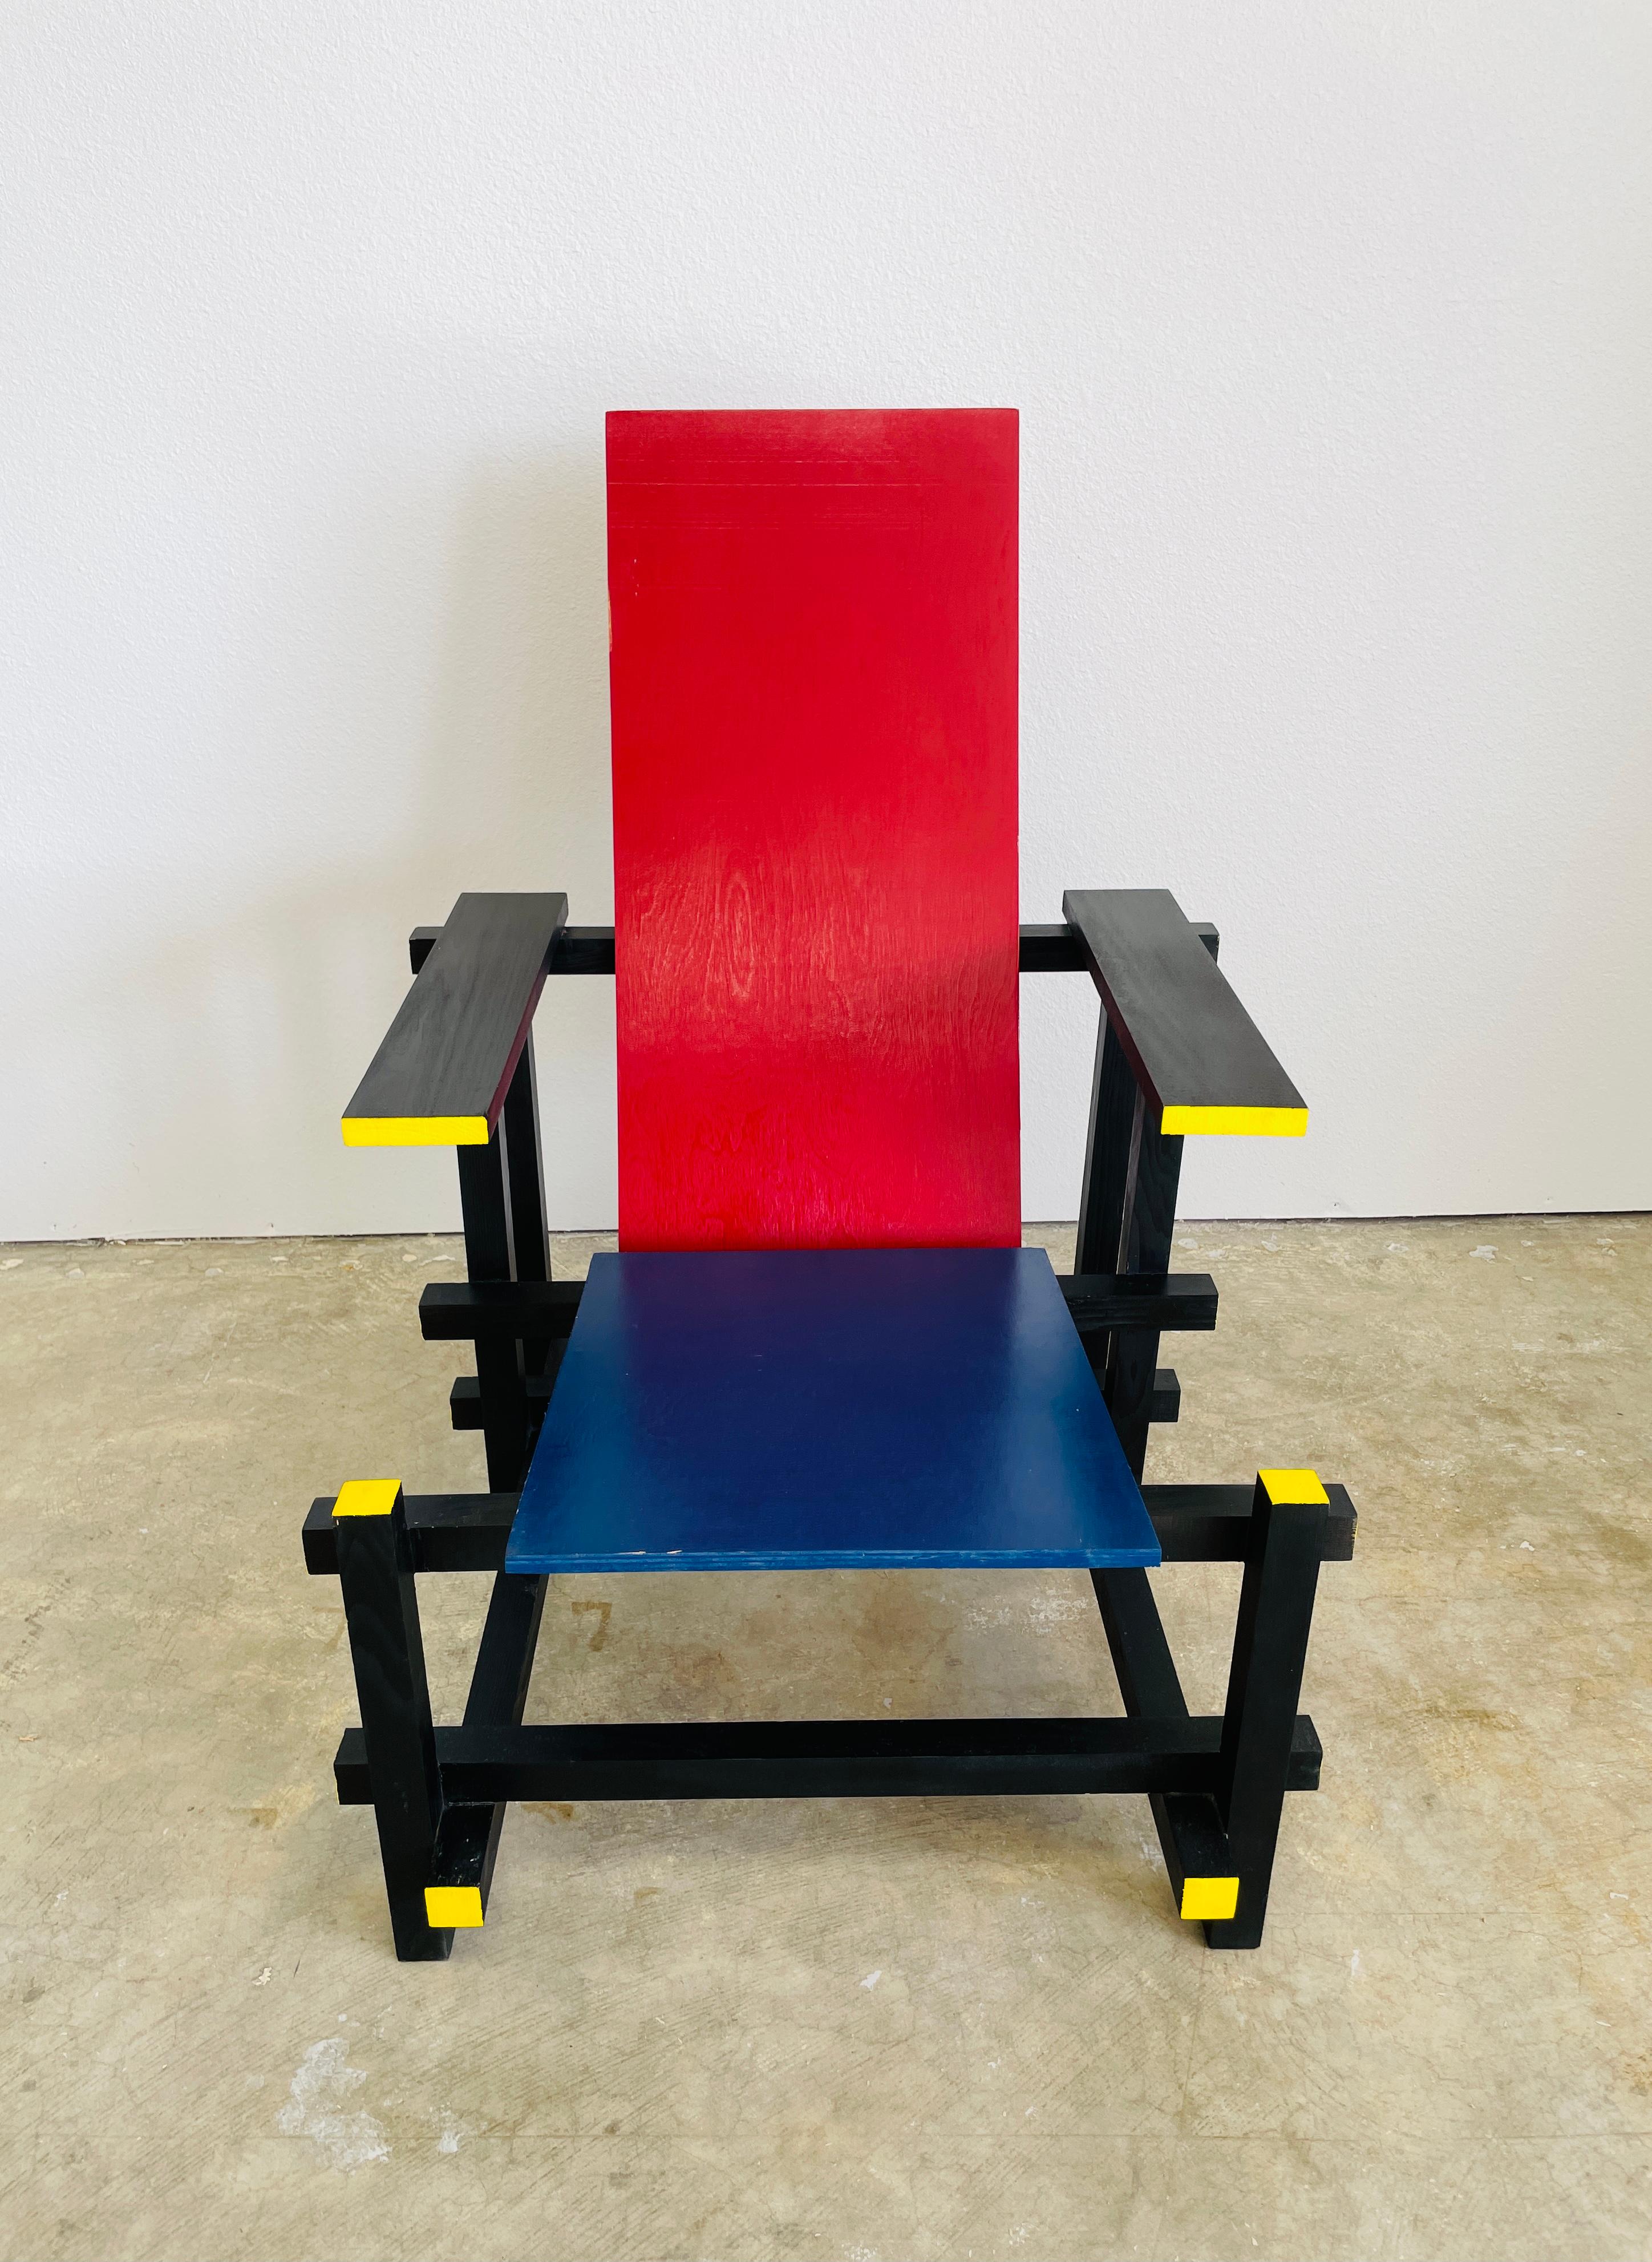 Vintage Gerrit Rietveld Style Inspiré par Piet Mondrian Chaise en bois.
Il a été refait par un architecte de Wichita Falls, au Kansas.
Signé et daté 09/30/09

Avec sa composition géométrique et ses couleurs primaires, le fauteuil Rouge et Bleu est